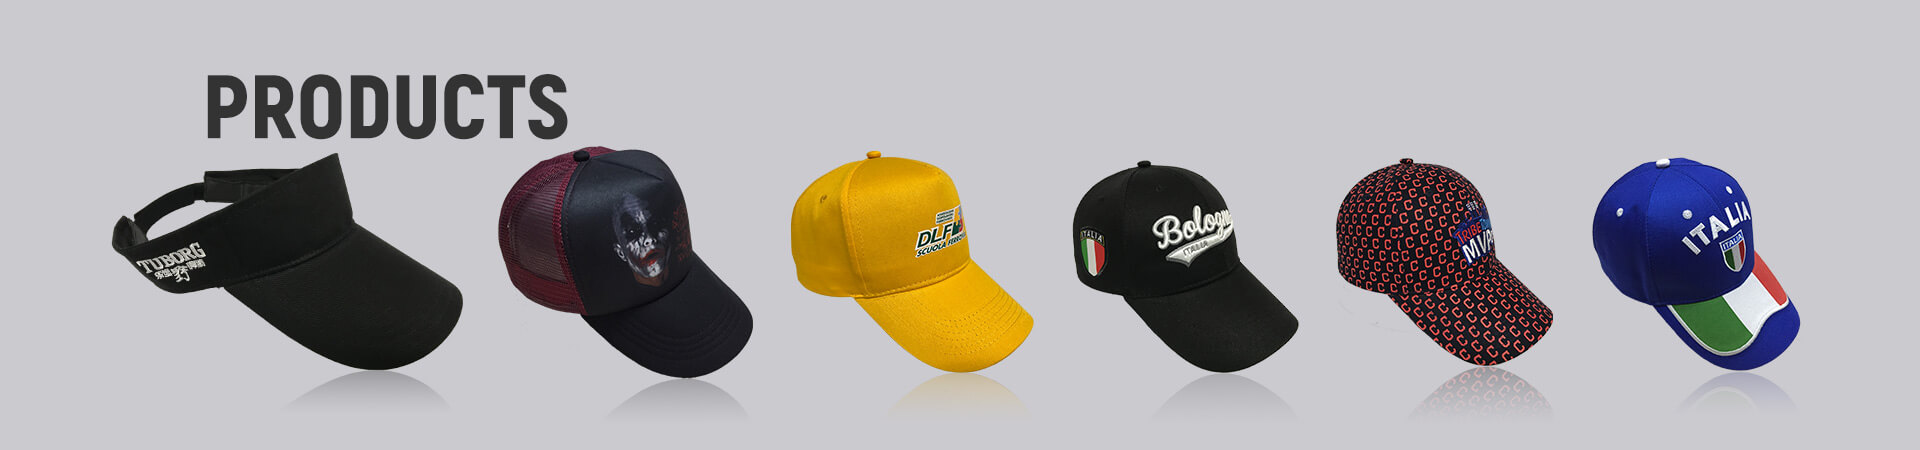 Sombrero bordado Archives - Gorra de béisbol, gorra deportiva, gorra de golf, gorra de pescador, gorra de camionero